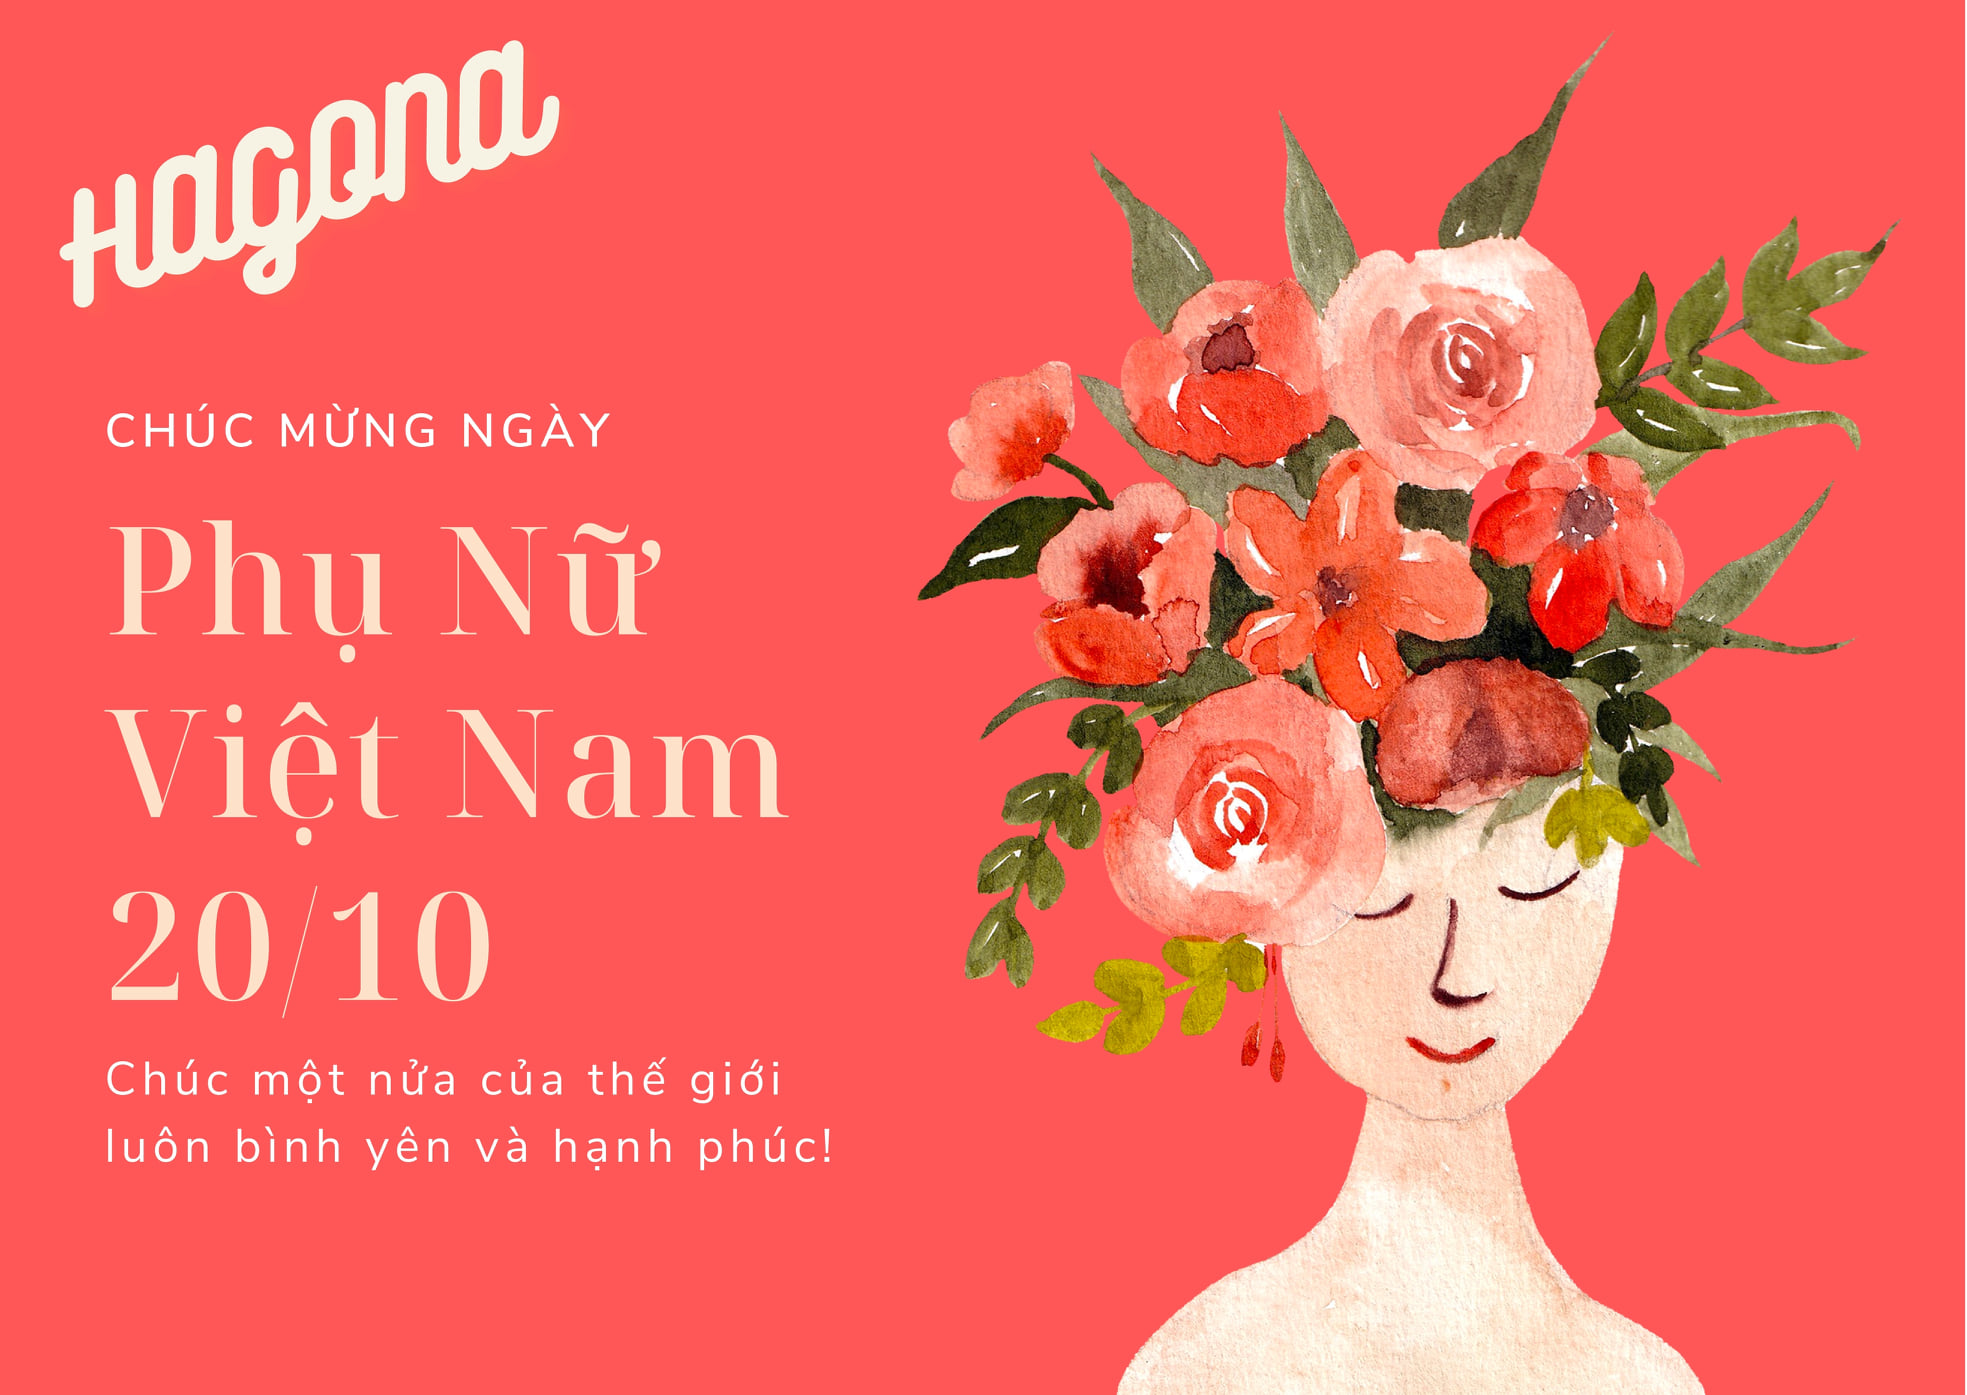 Hagona Chúc Mừng Ngày Phụ Nữ Việt Nam 20 Tháng 10